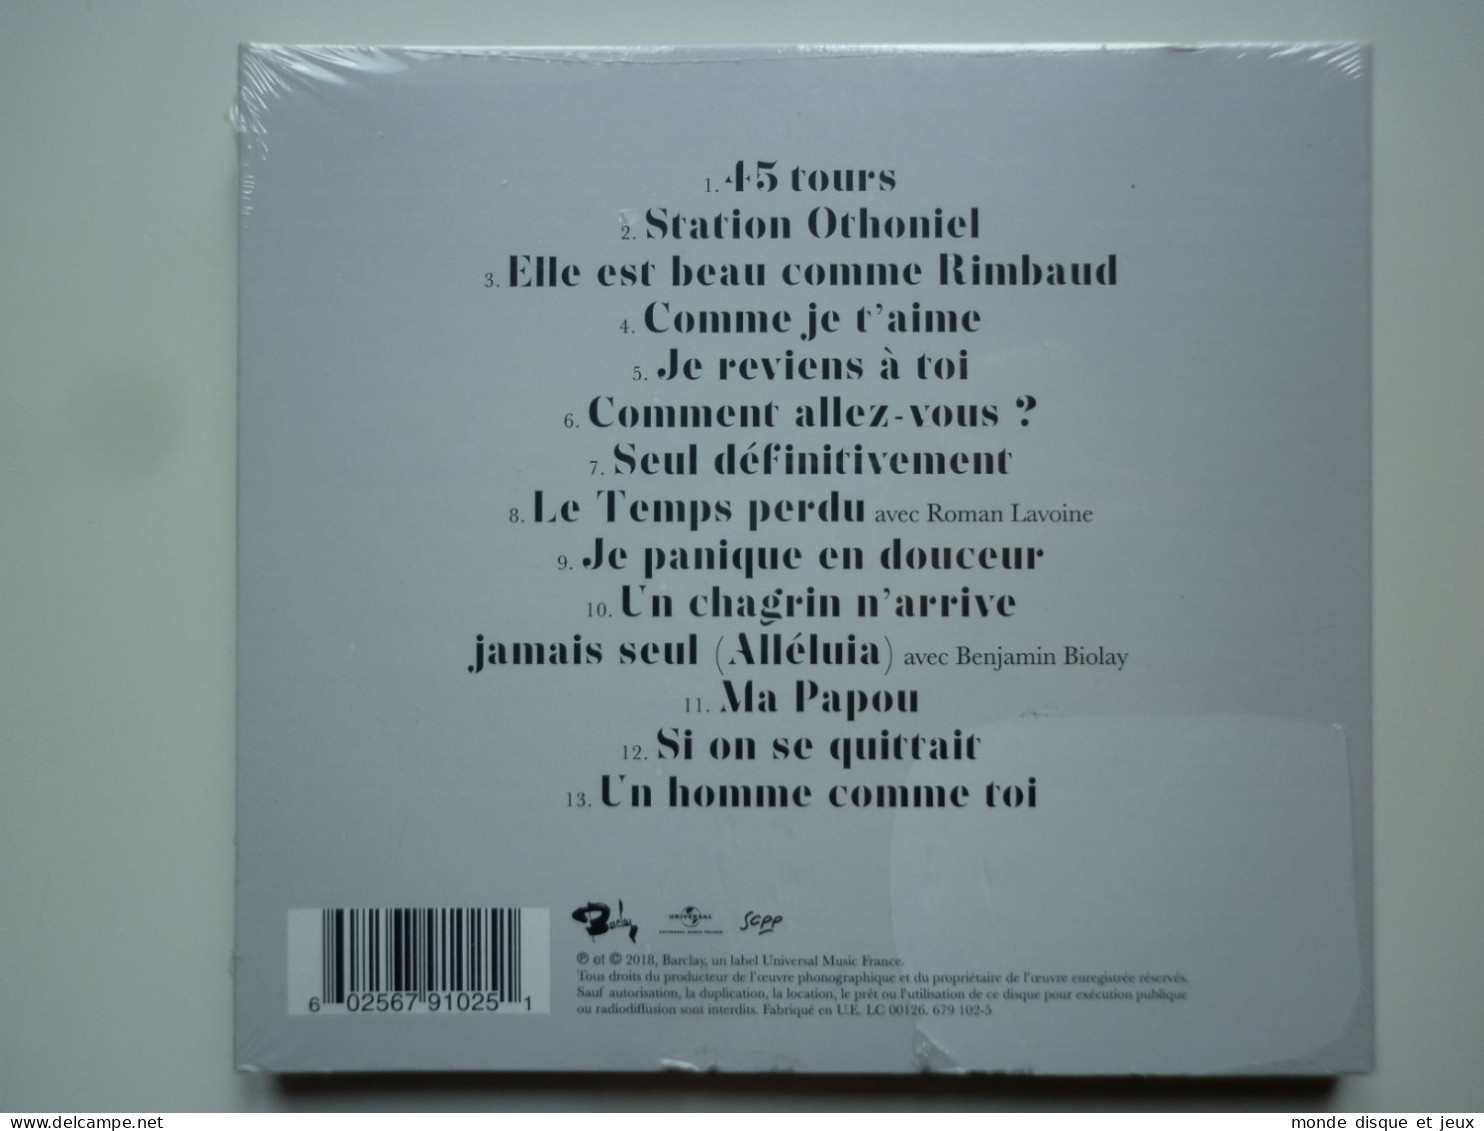 Marc Lavoine Cd Album Digipack Je Reviens À Toi - Autres - Musique Française